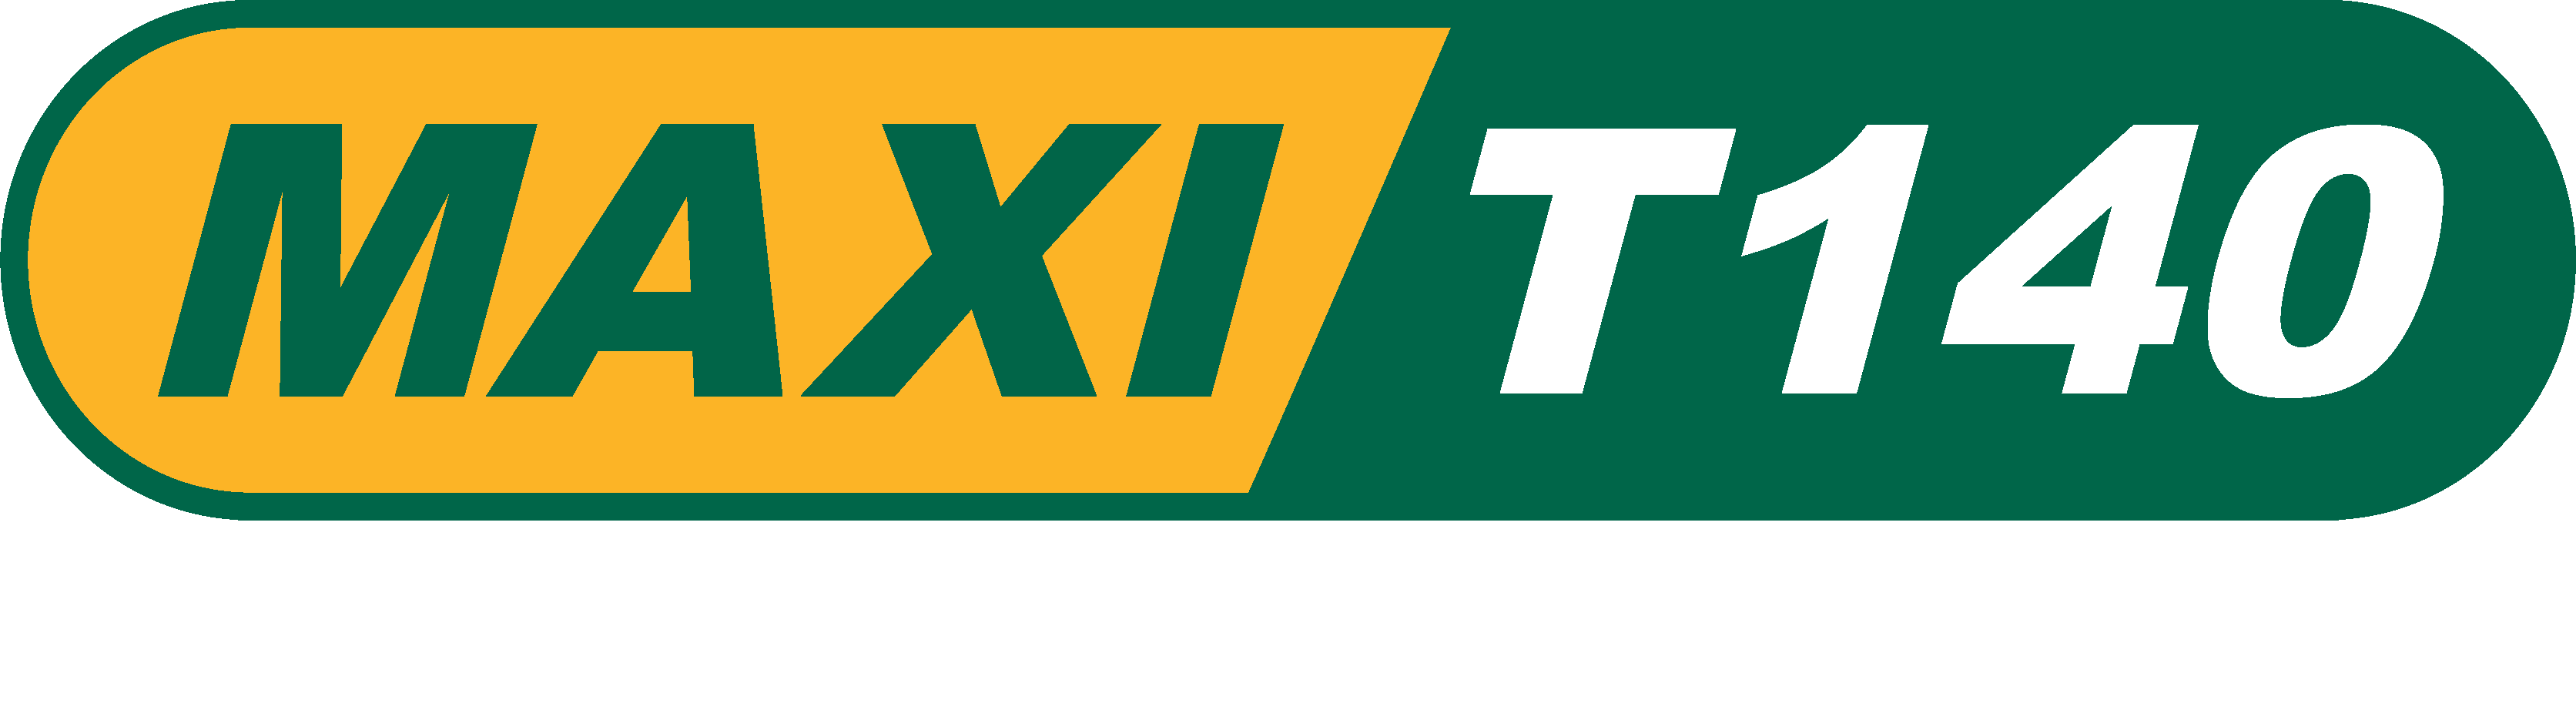 Maxi T140 slogan_white 22